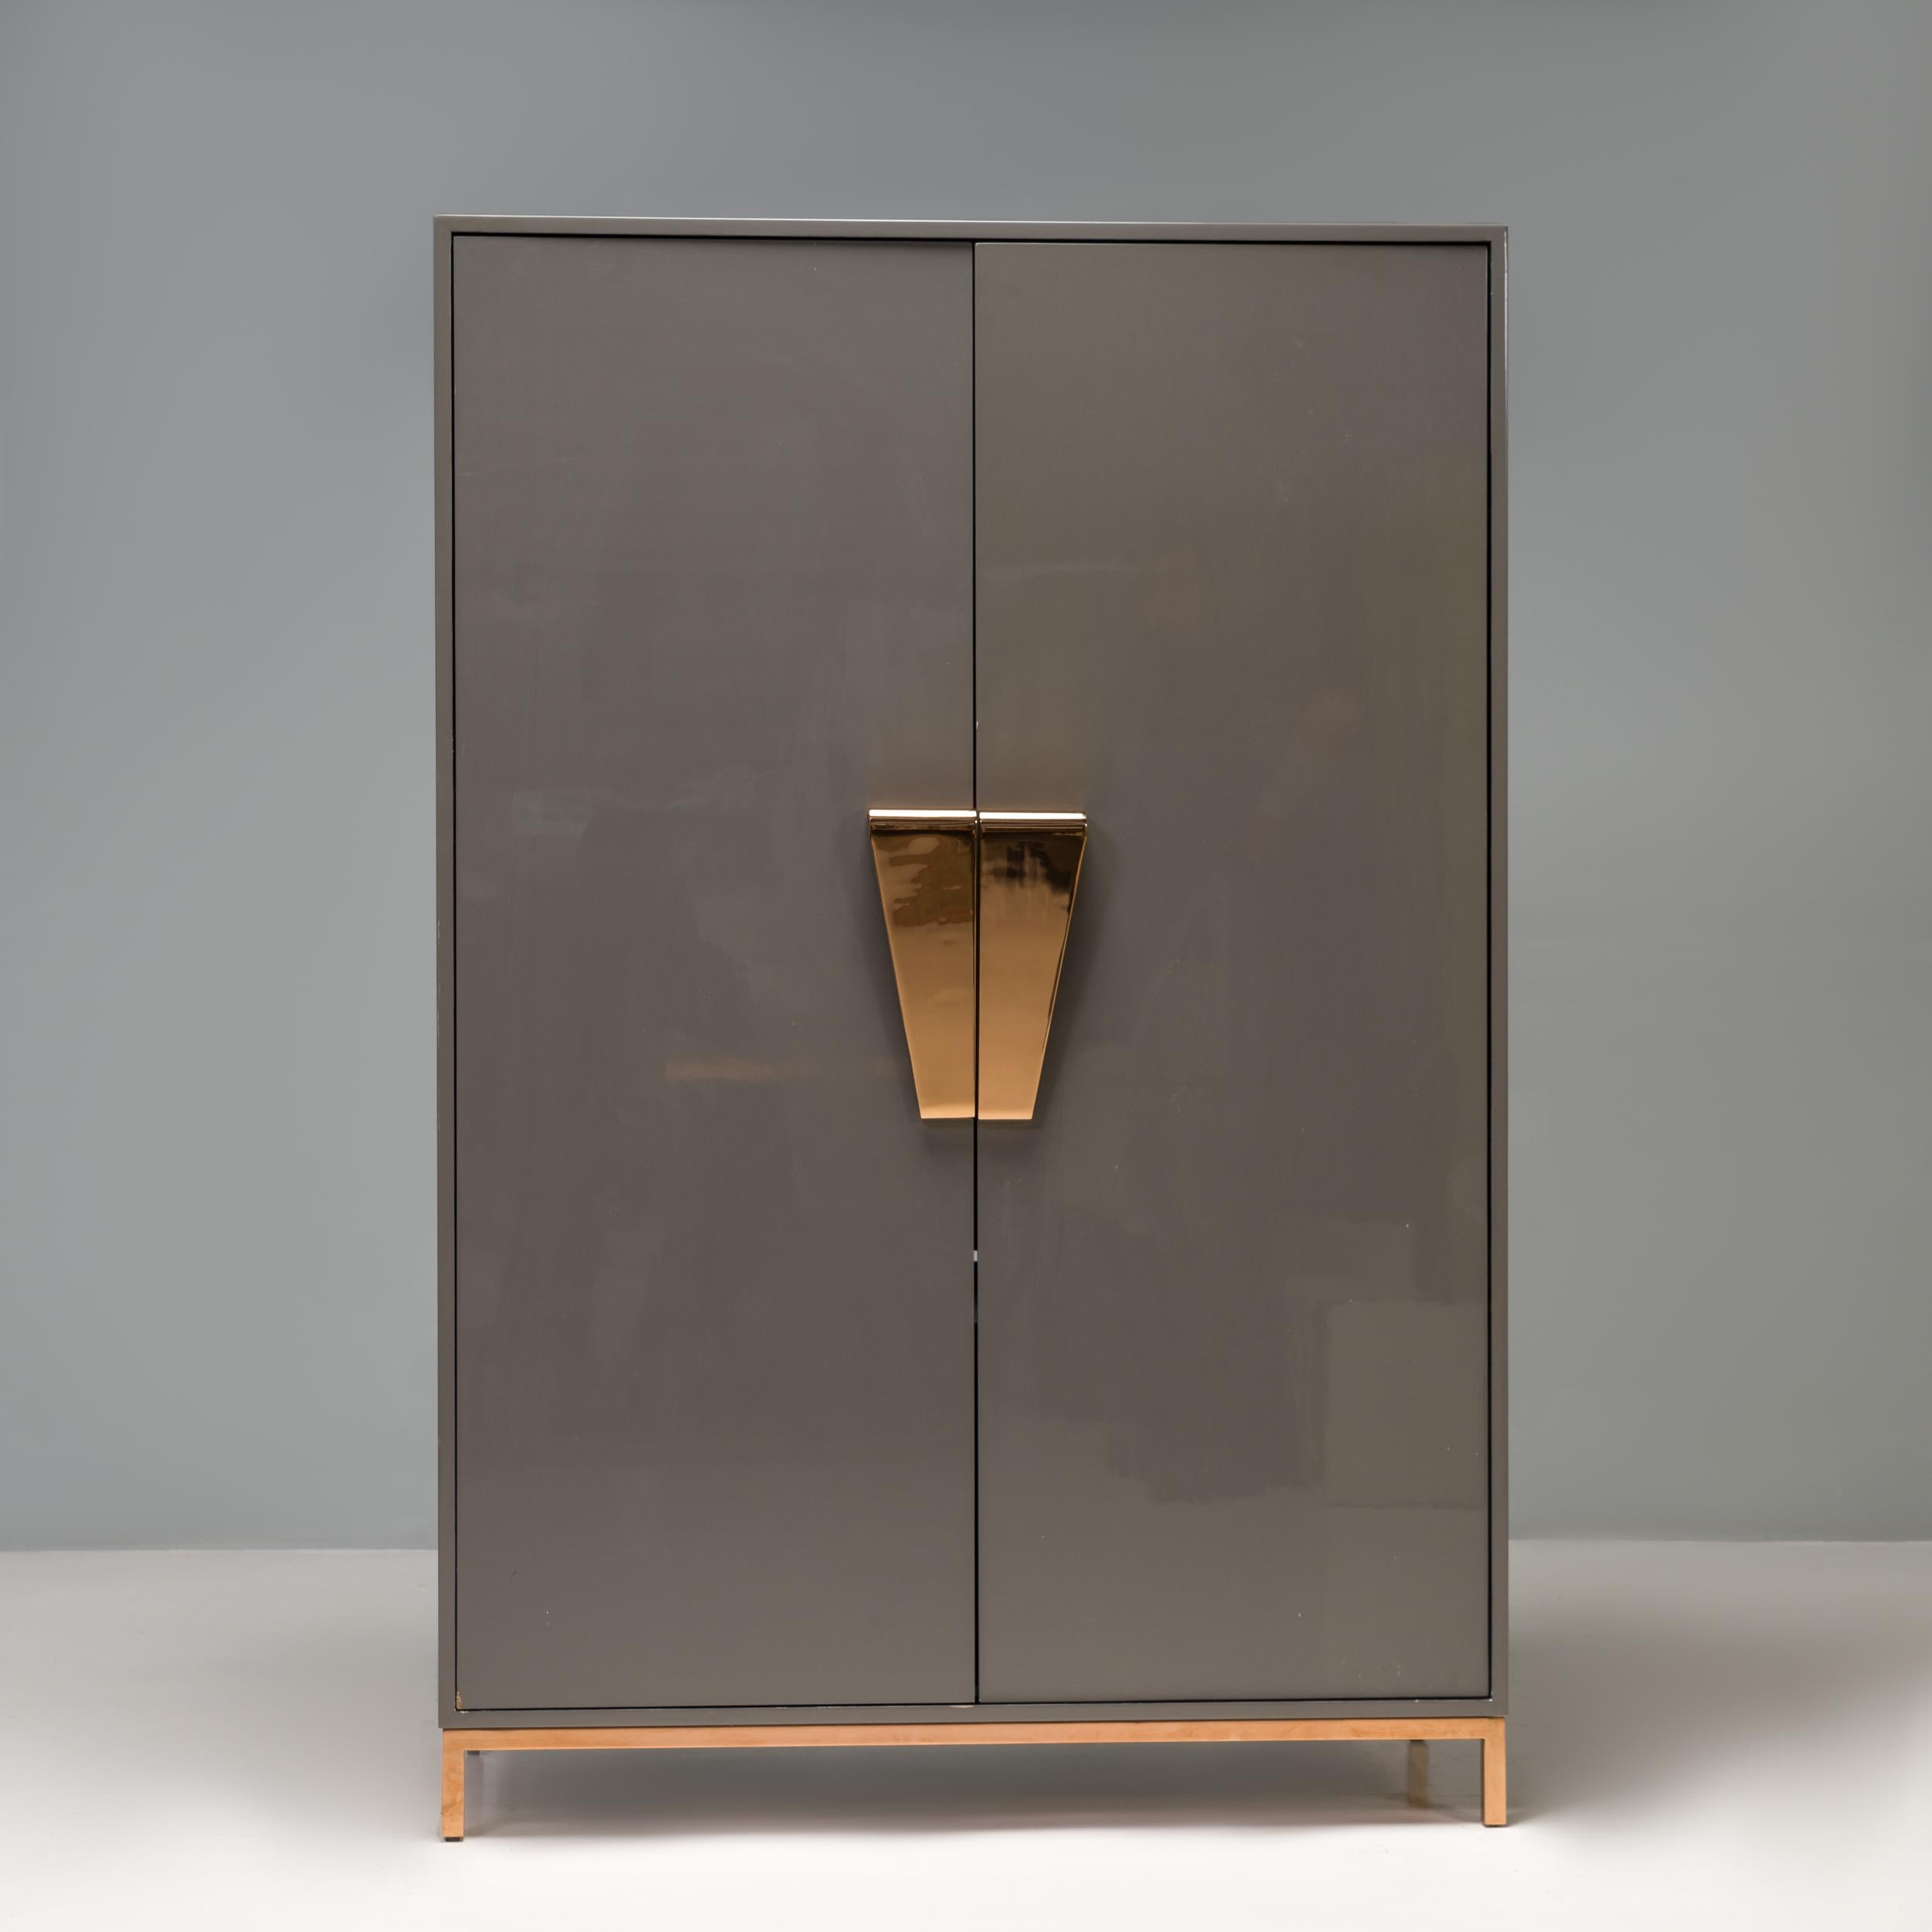 Der Schrank Shield wurde von der britischen Innenarchitektin Kelly Hoppen als Teil ihrer charakteristischen Möbelserie entworfen und bietet eine elegante, moderne Aufbewahrungslösung.

Der Schrank ist aus dunkelgrau lackiertem Holz gefertigt und